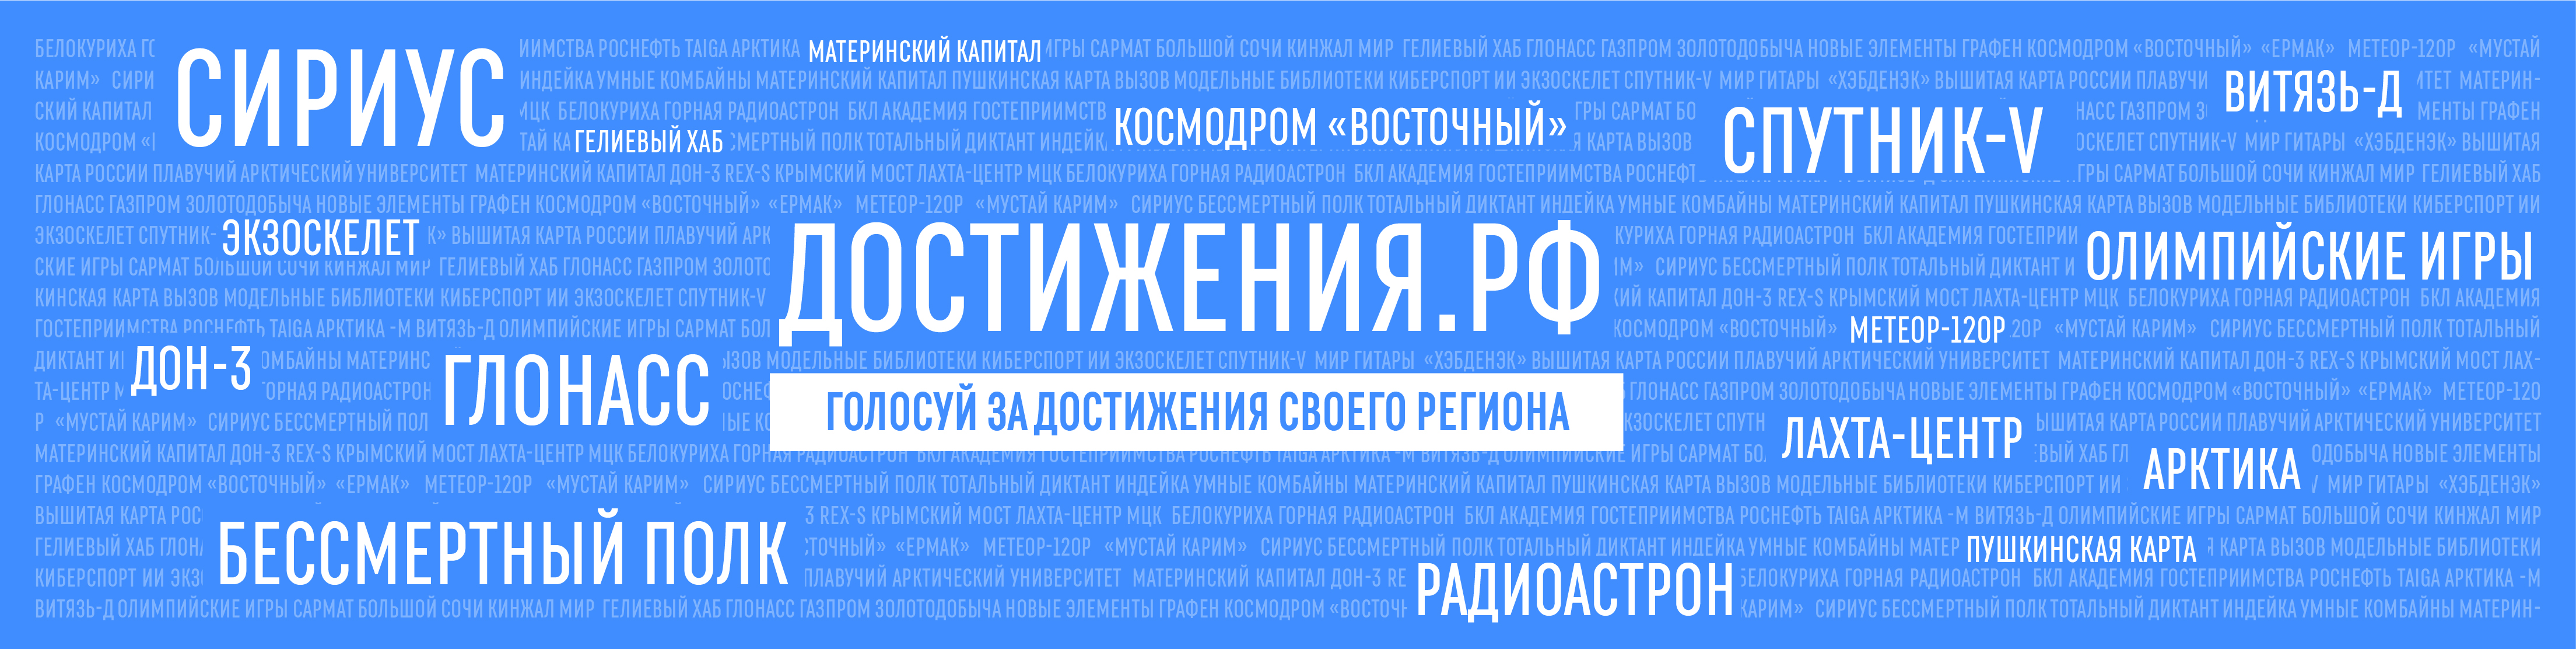 Онлайн-голосование за значимые достижения российских регионов.